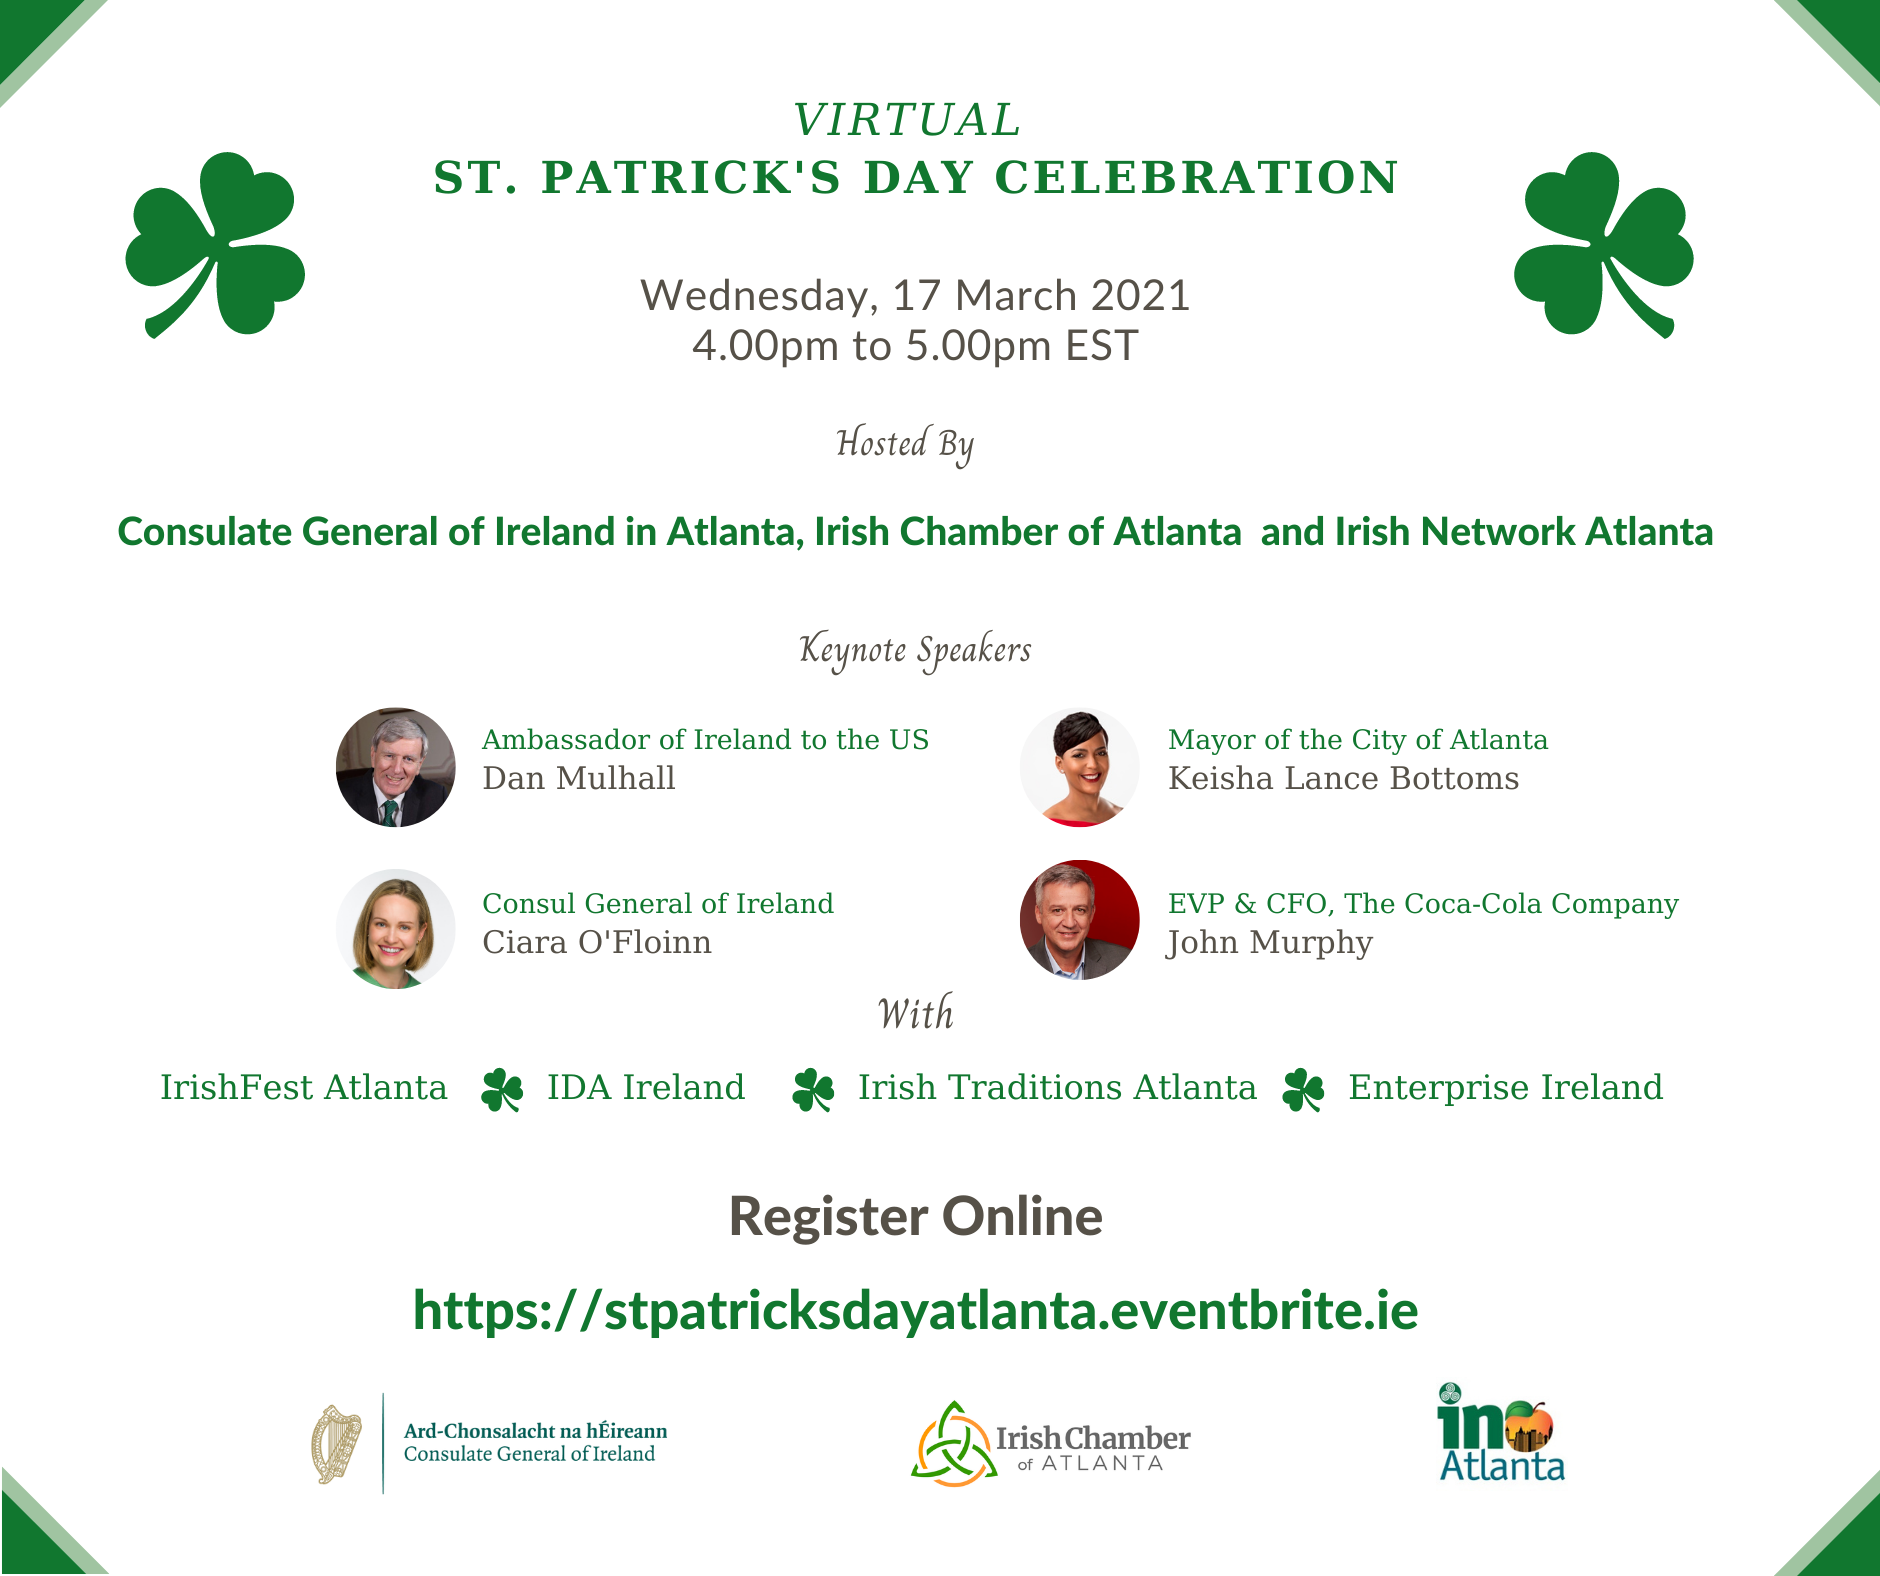 St. Patrick's Day Virtual Celebration